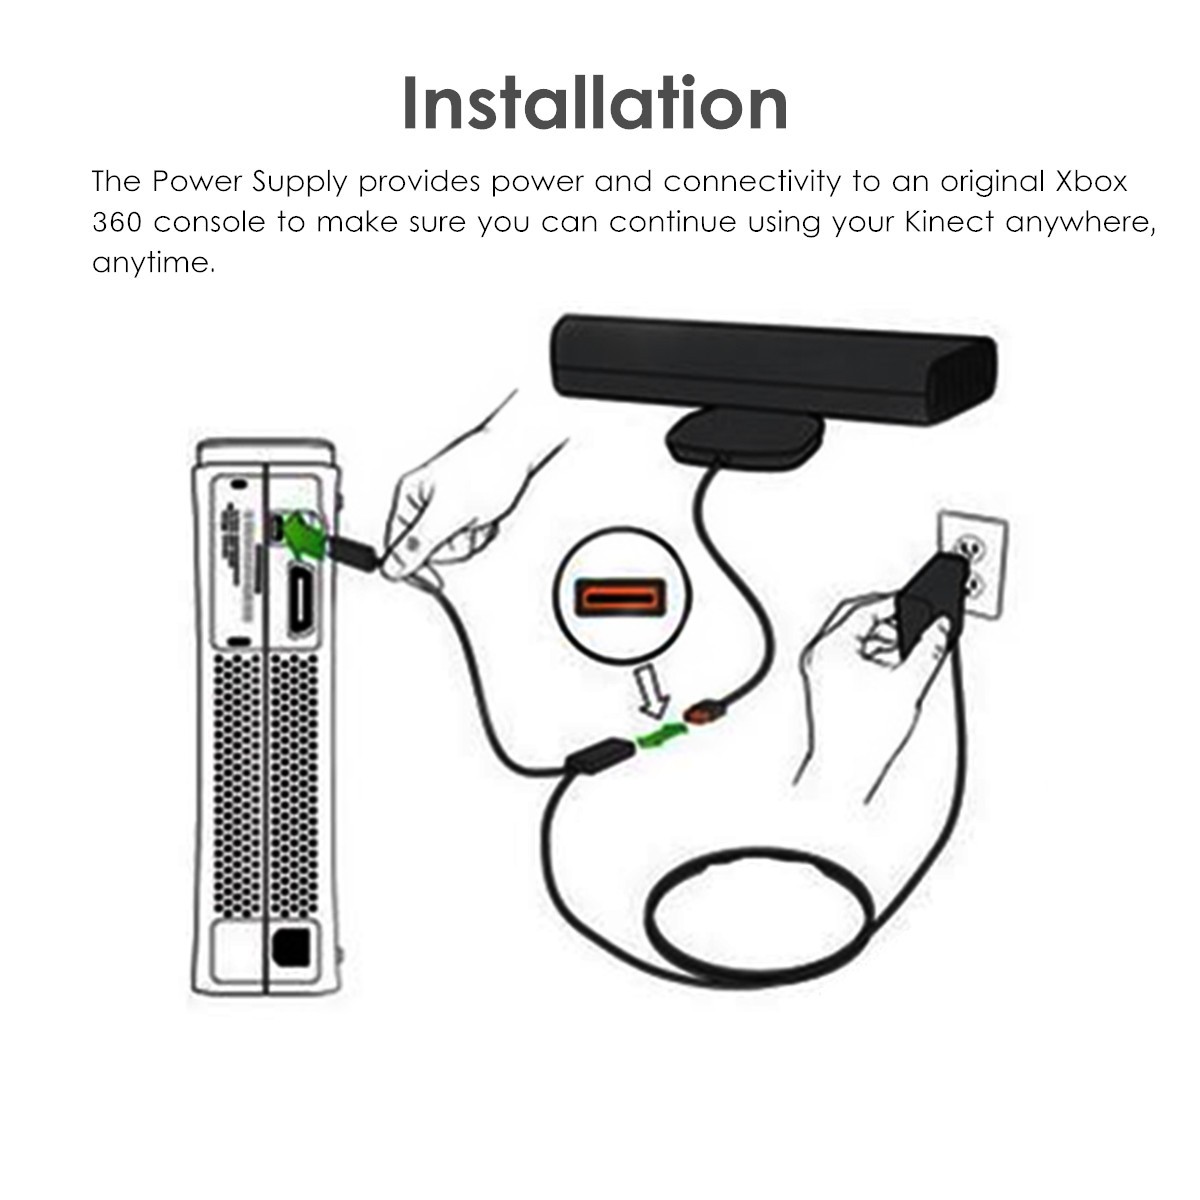 2.3m USB AC Adapter Power Supply Cable for Xbox 360 Kinect Sensor EU/US Plug 10